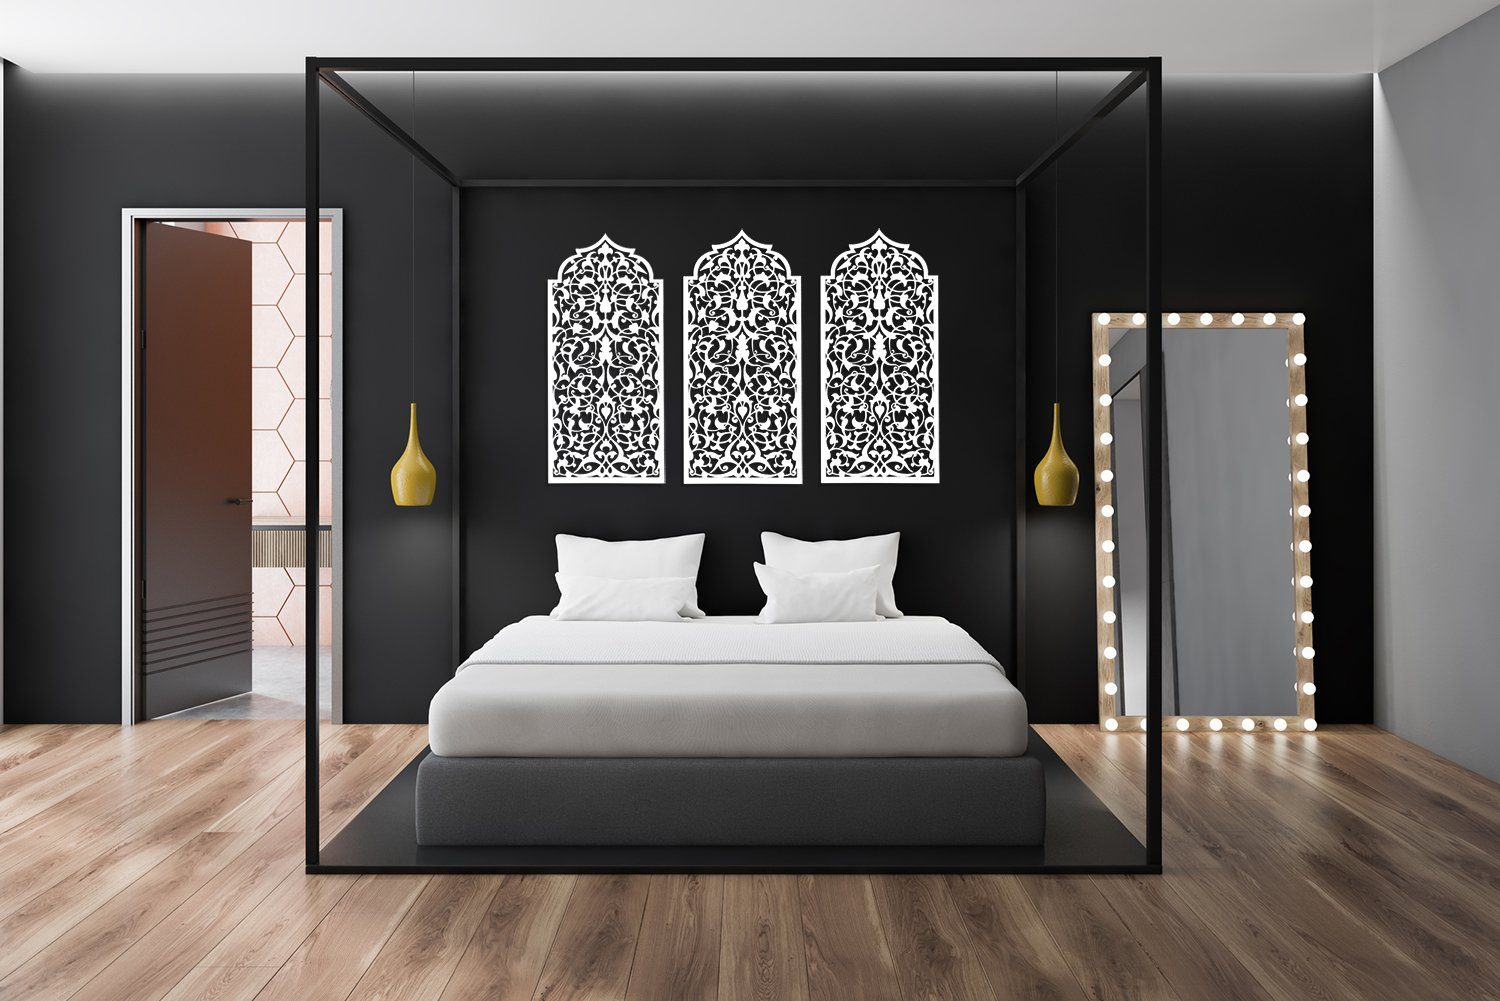 ORNAMENTI Mehrteilige Bilder 3D grosse Marokkanisches Fenster, Wanddeko, Handwerk Holzbild